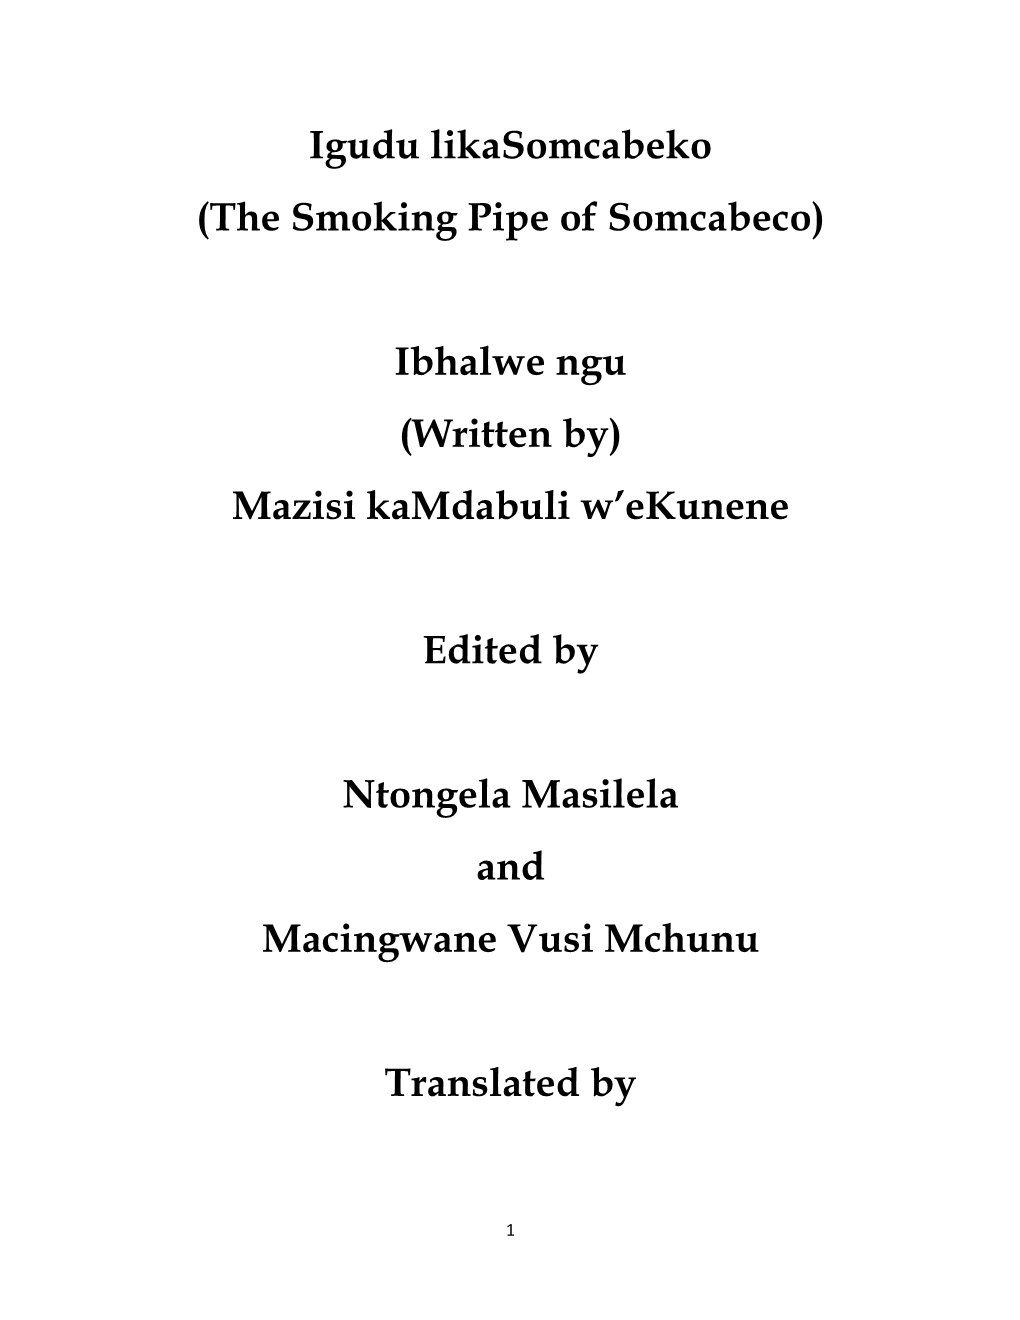 Igudu Likasomcabeko (The Smoking Pipe of Somcabeco) Ibhalwe Ngu